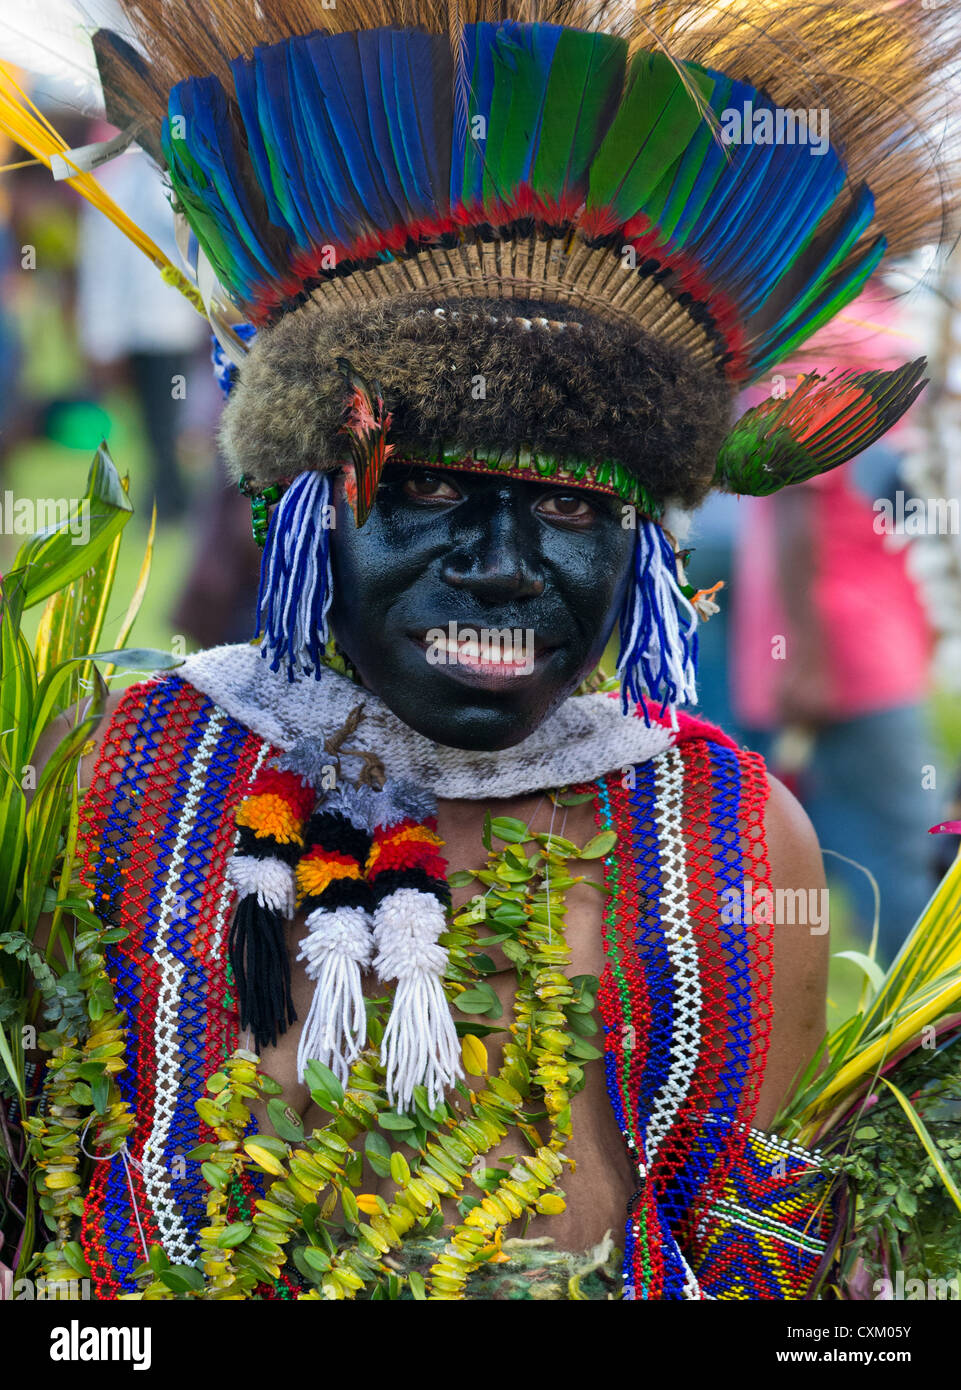 Frau gekleidet in traditionellen Stammes-Outfit für die Goroka Show, ein jährliches Festival in Papua New Guinea Highlands Stockfoto